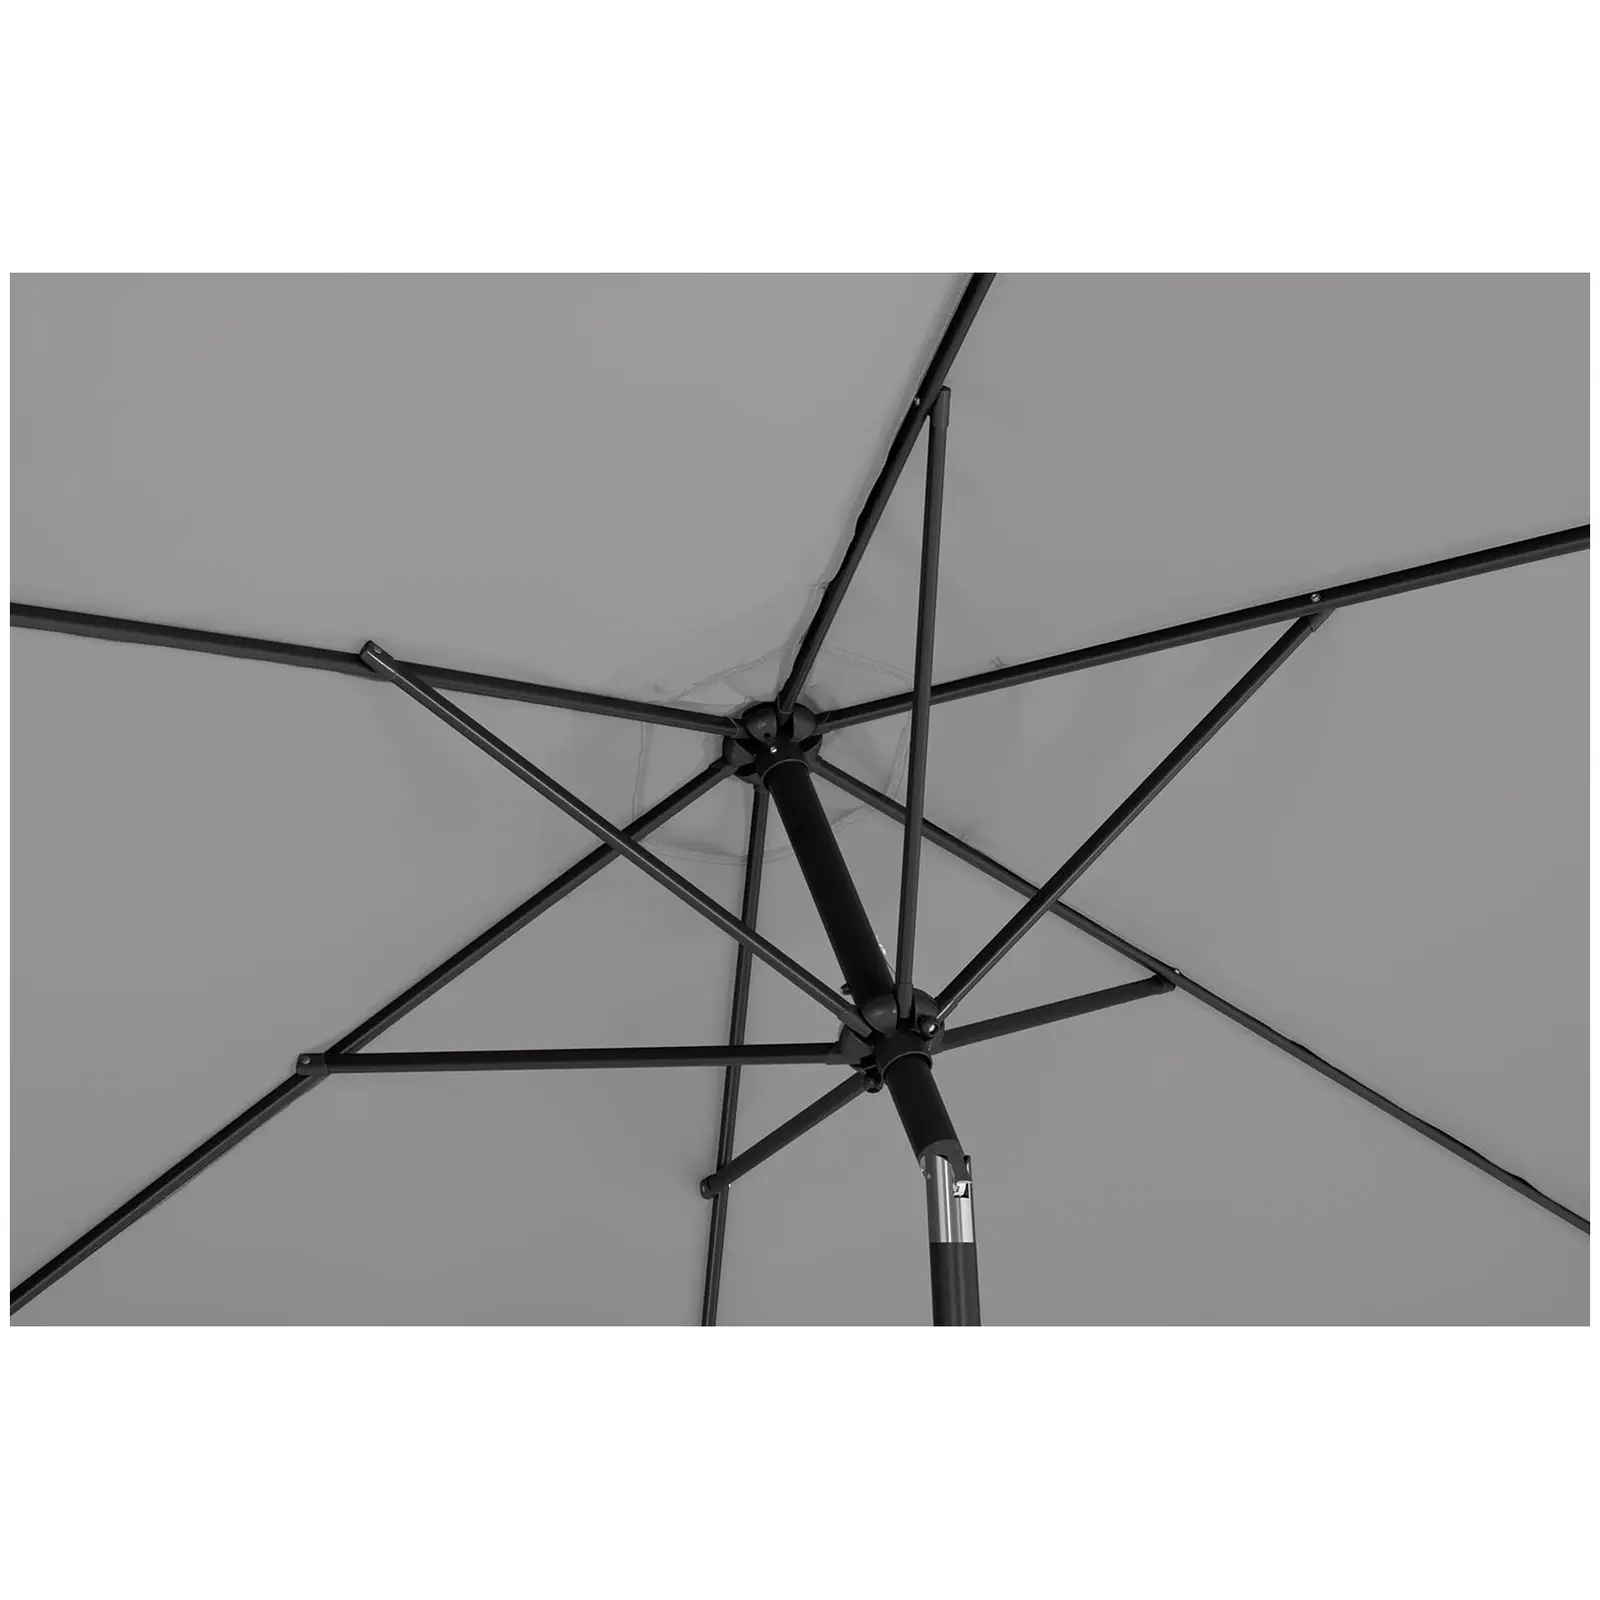 Parasol - mørkegrå - sekskantet - 270 cm i diameter